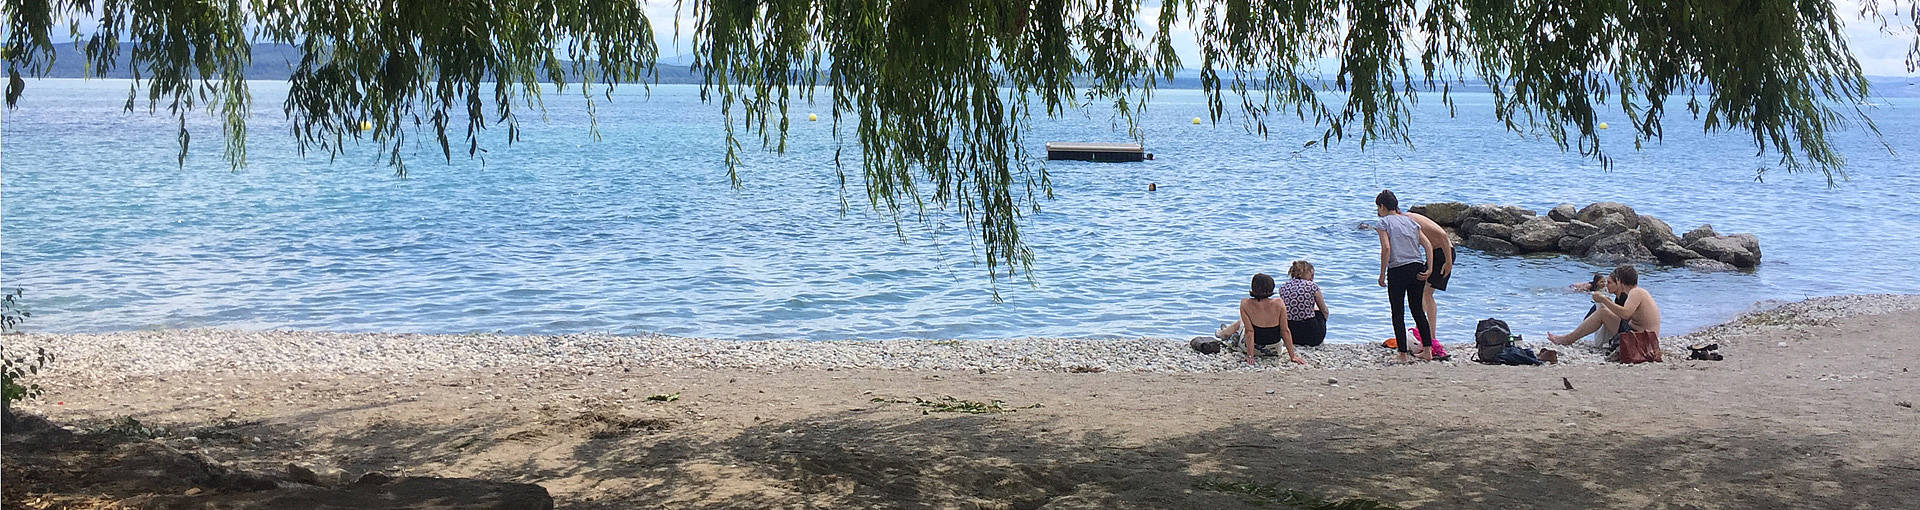 Le lac de Neuchâtel